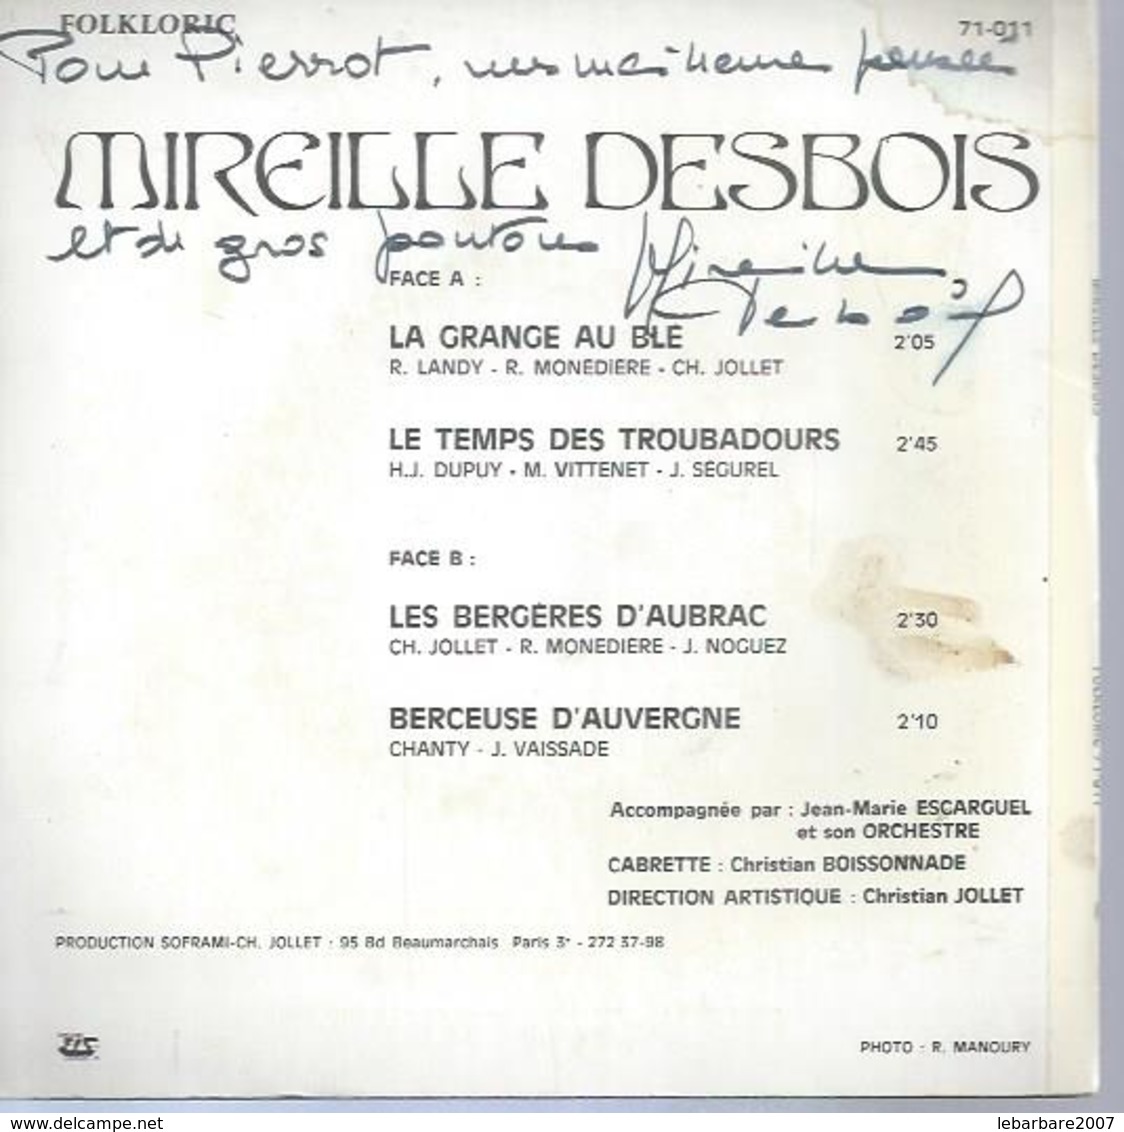 45 Tours EP - MIREILLE DESBOIS  - FOLKLORIC 71-011  " LA GRANGE AU BLE " + 1  ( Dédicacé ) - Autres - Musique Française